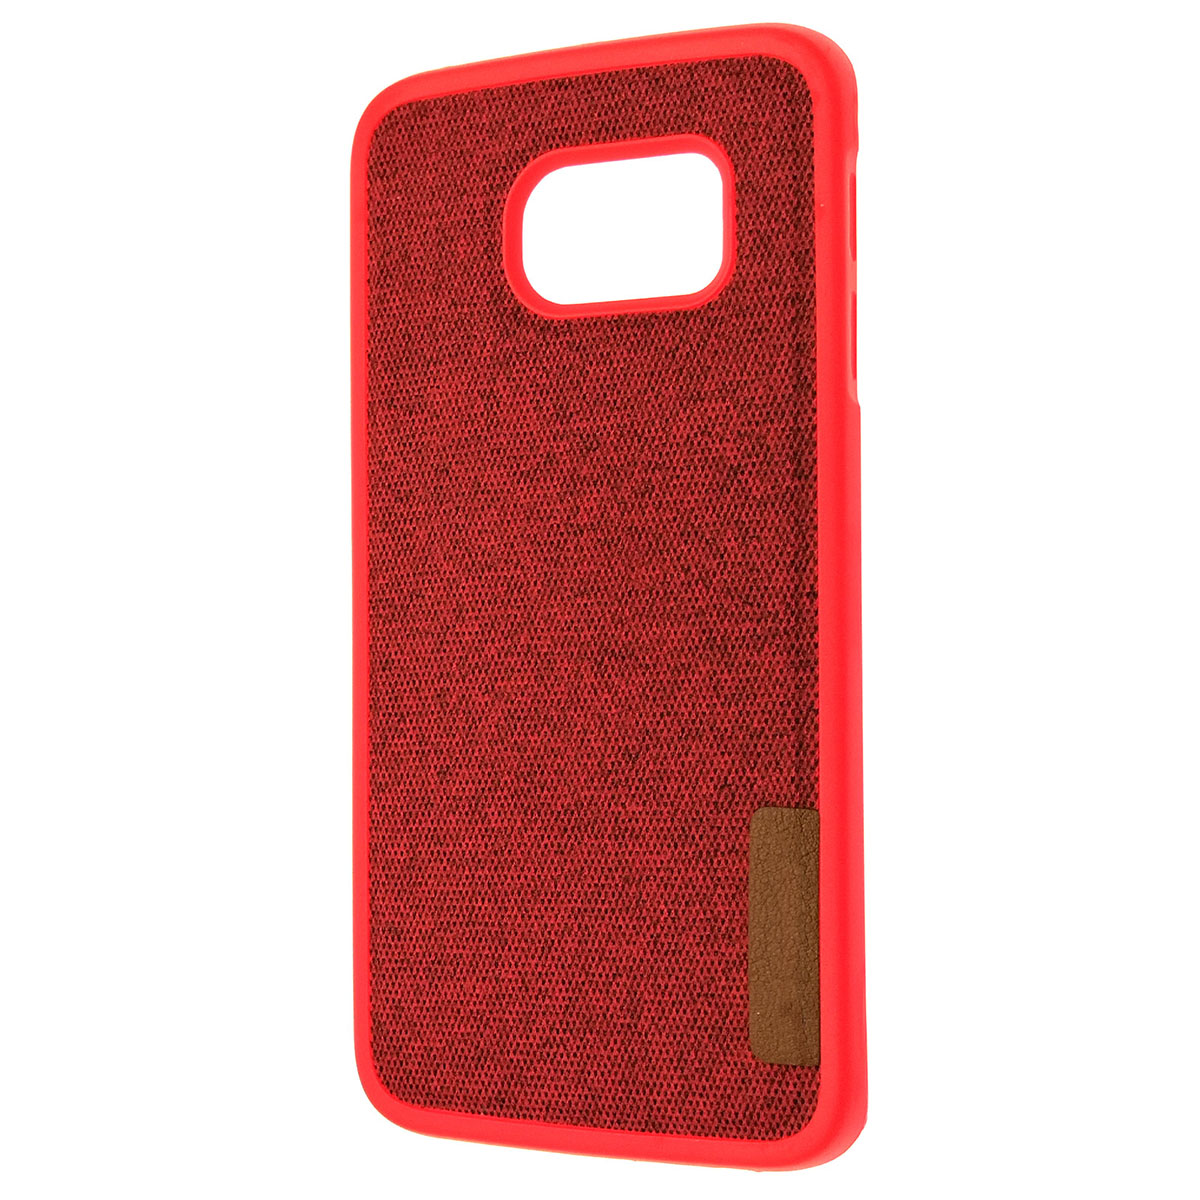 Чехол накладка для SAMSUNG Galaxy S6 Edge, экокожа, цвет красный.